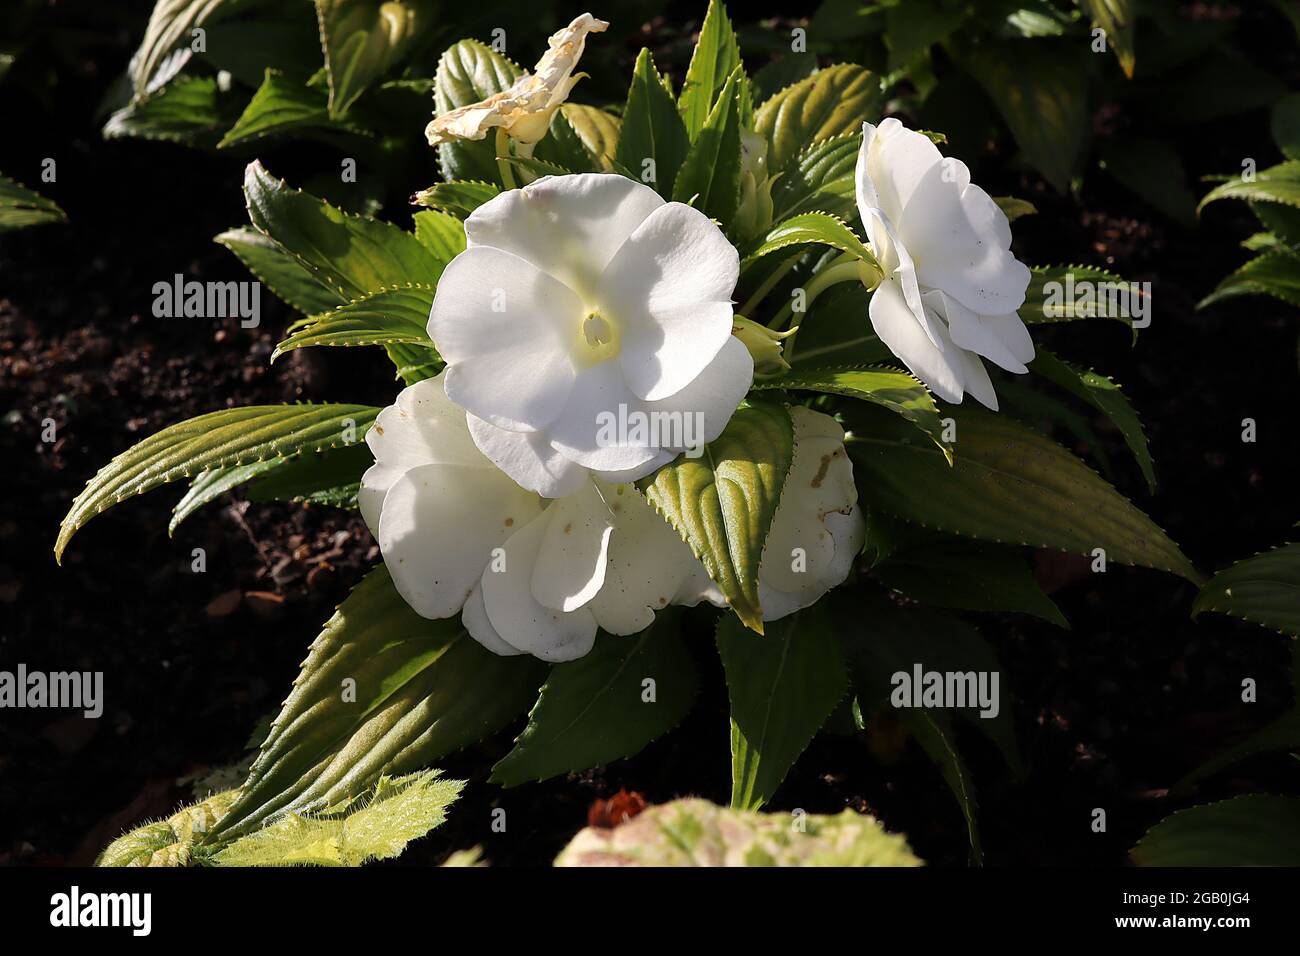 Impatiens hawkerii ‘Super Sonic White’ Nouvelle Guinée impatiens White - fleurs blanches plates semi-doubles et feuilles dentelées vert foncé, juin, Angleterre, Royaume-Uni Banque D'Images